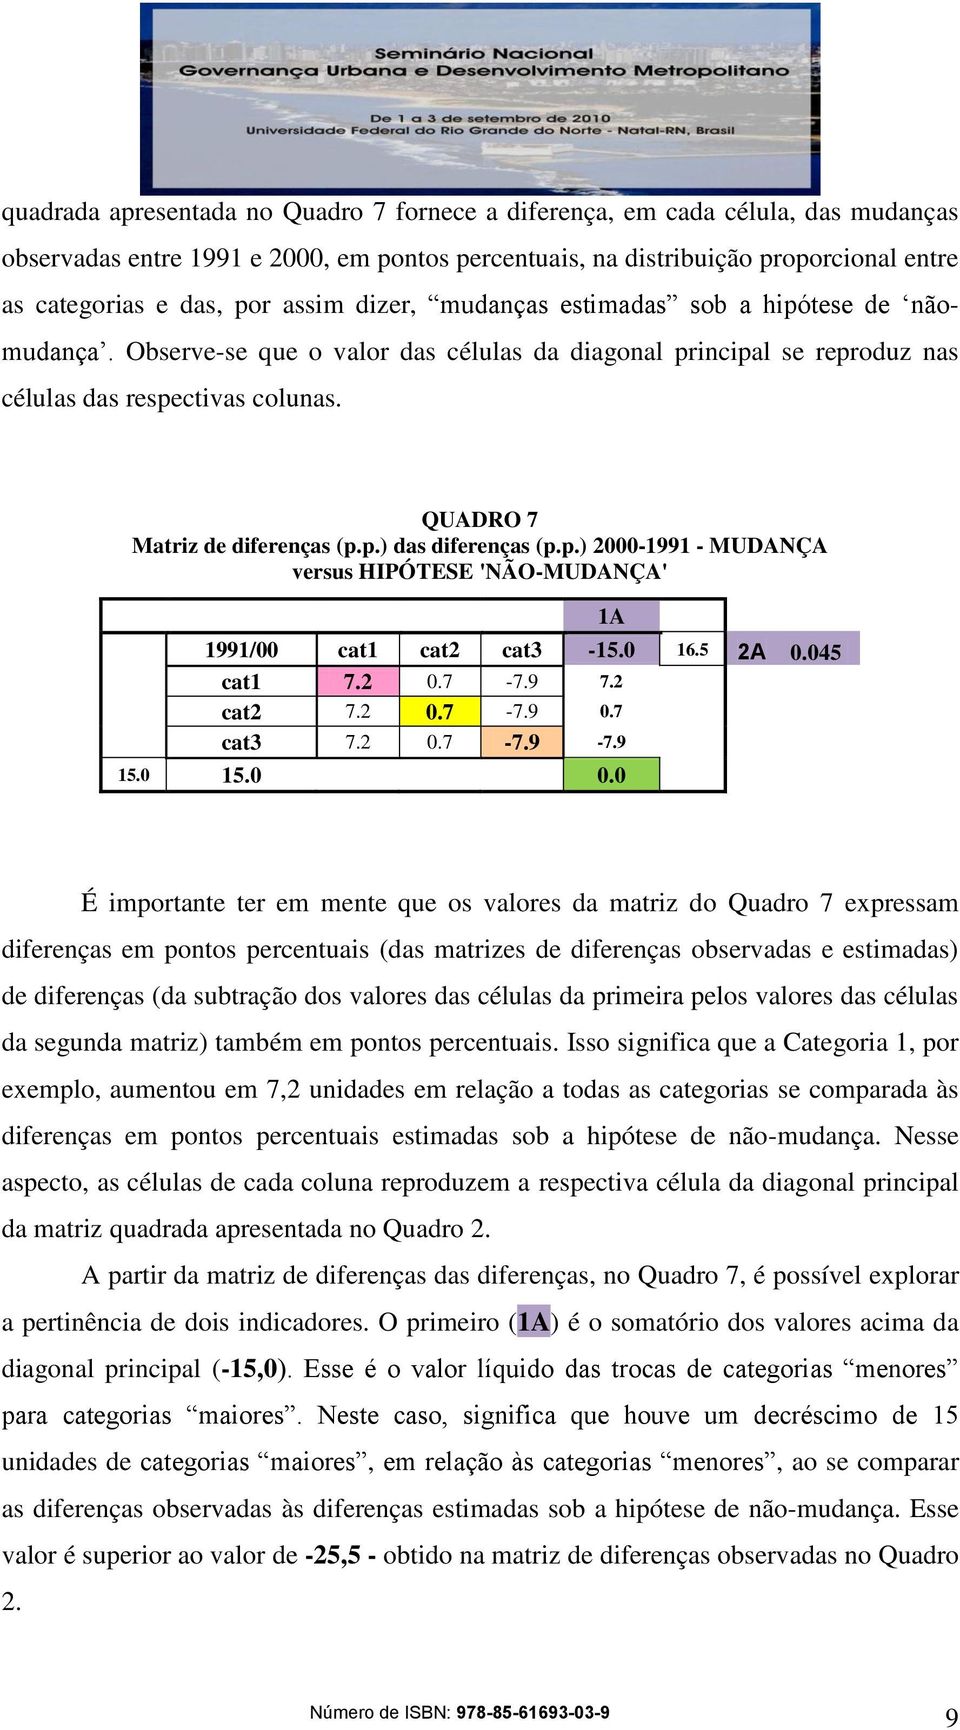 QUADRO 7 Matriz de diferenças (p.p.) das diferenças (p.p.) 2000-1991 - MUDANÇA versus HIPÓTESE 'NÃO-MUDANÇA' 1991/00 cat1 cat2 cat3-15.0 16.5 2A 0.045 cat1 7.2 0.7-7.9 7.2 cat2 7.2 0.7-7.9 0.7 cat3 7.